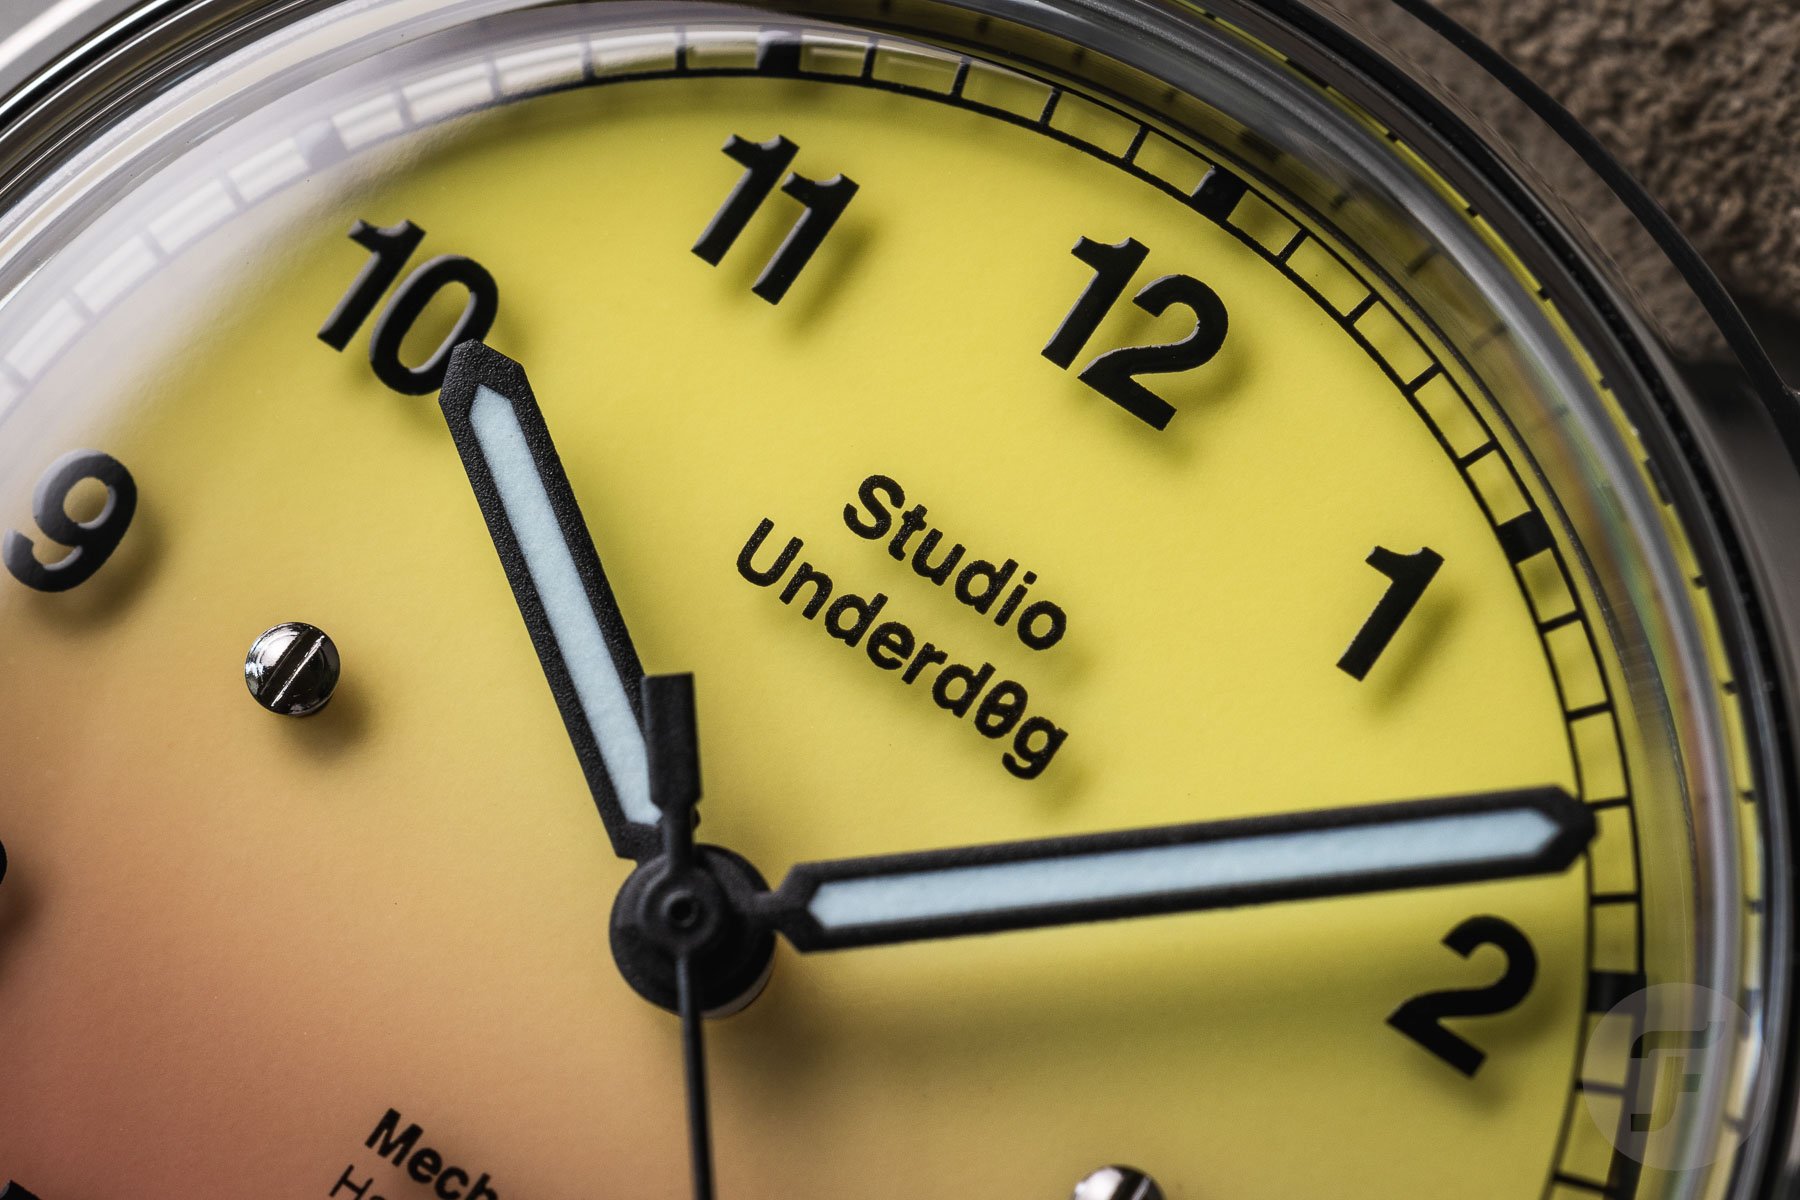 Сравнение часов: Serica 6190 vs Studio Underd0g 02Series - кто победит?